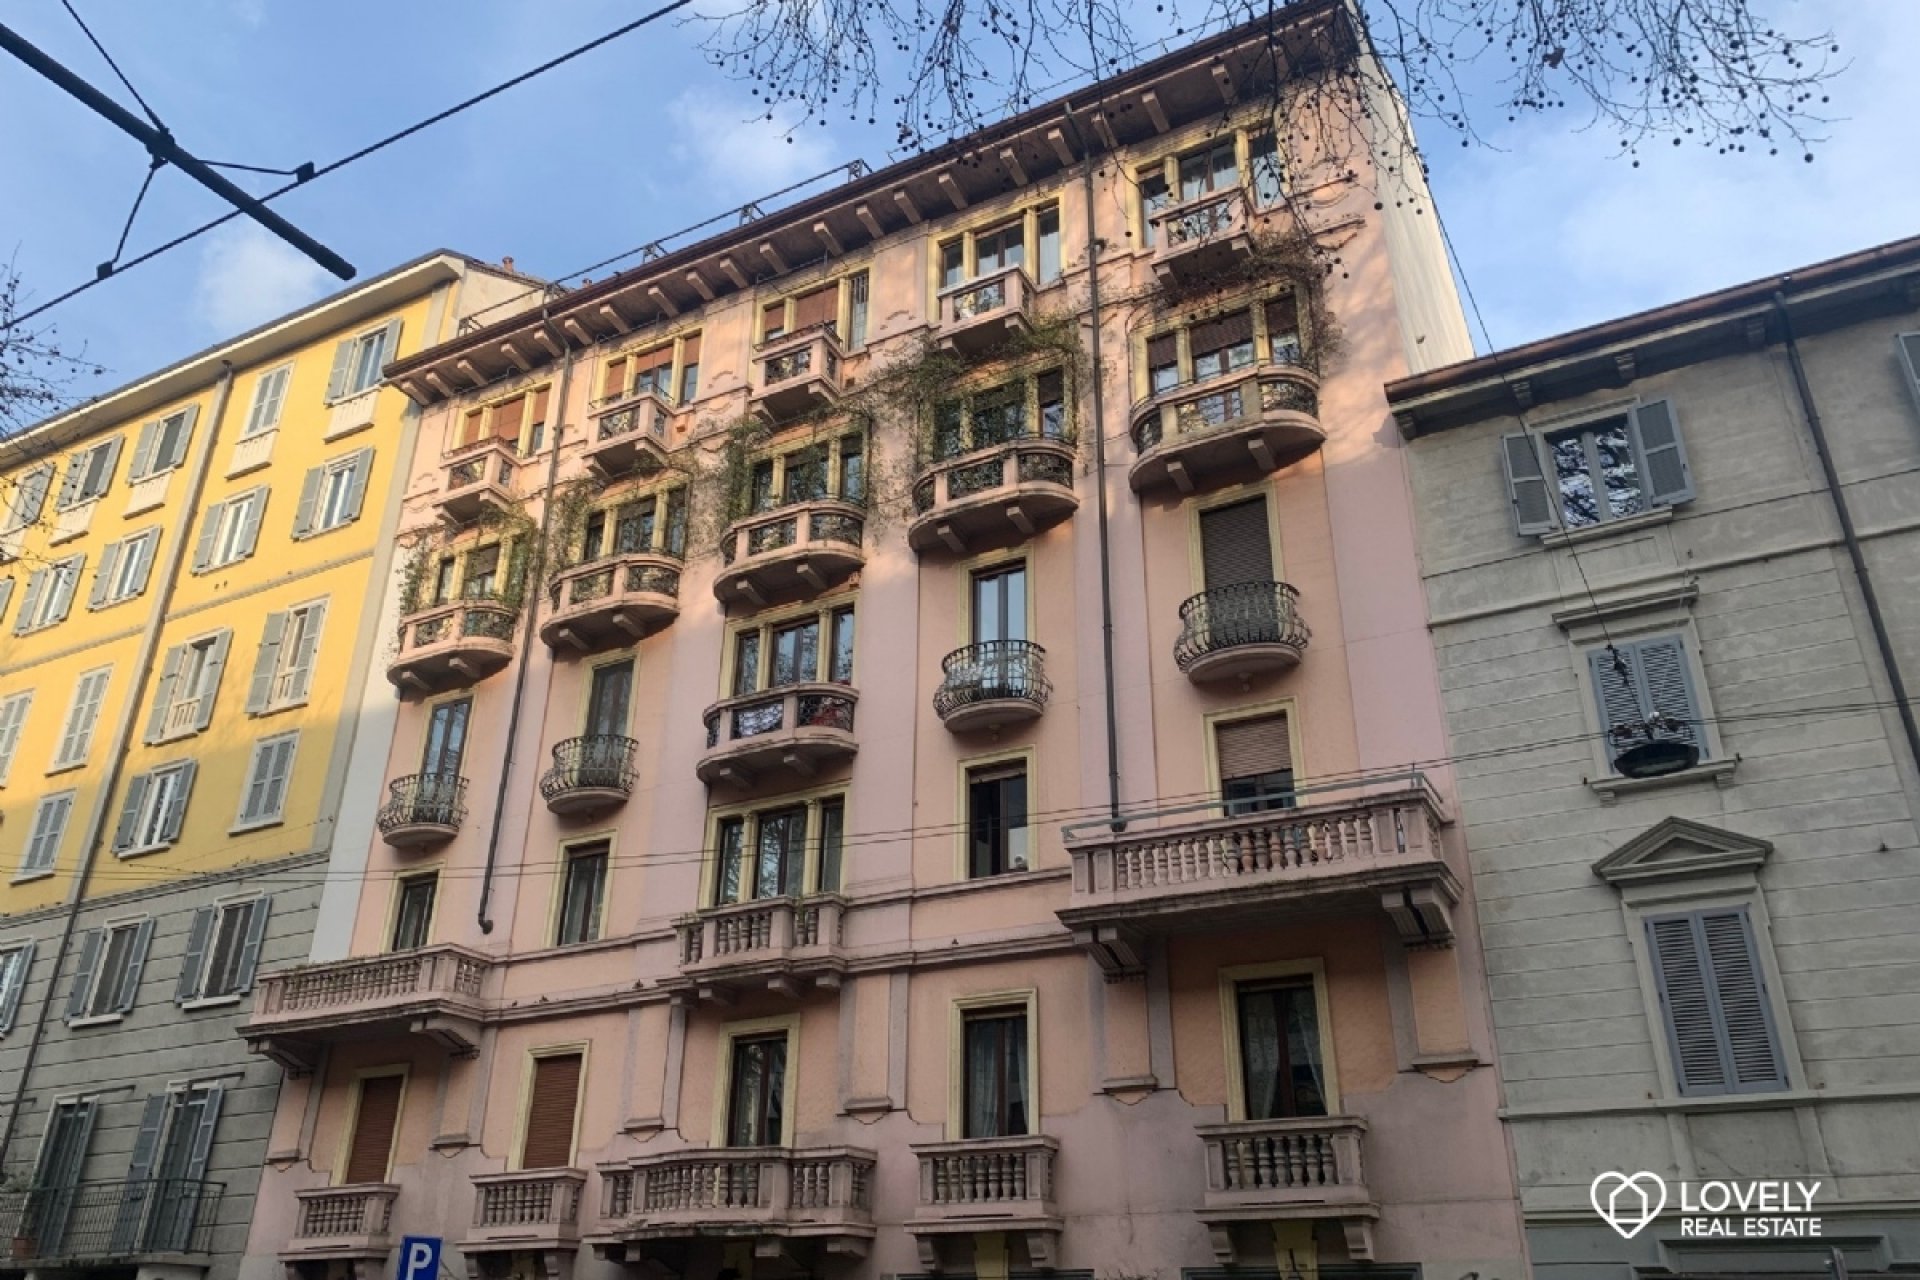 Affitto Appartamento Milano - TRILOCALE PIANO ALTO - PIAZZA V GIORNATE Località Porta Venezia - Piave - Cinque Giornate